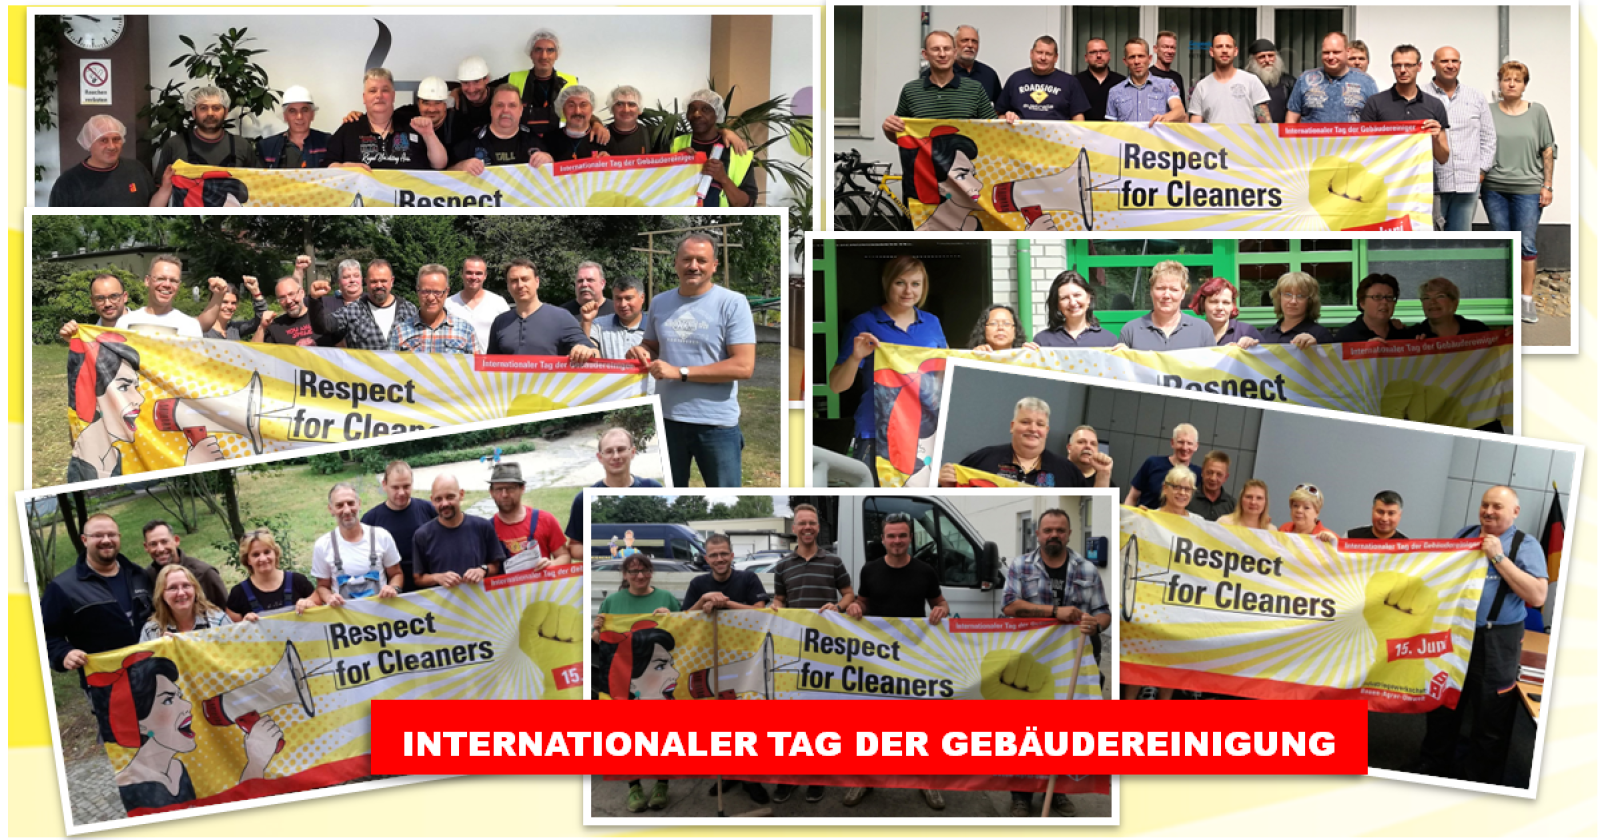 Berliner Reinigungskräfte feiern Internationalen Tag der Gebäudereinigung mit Grillfest und Besuchen in Objekten.